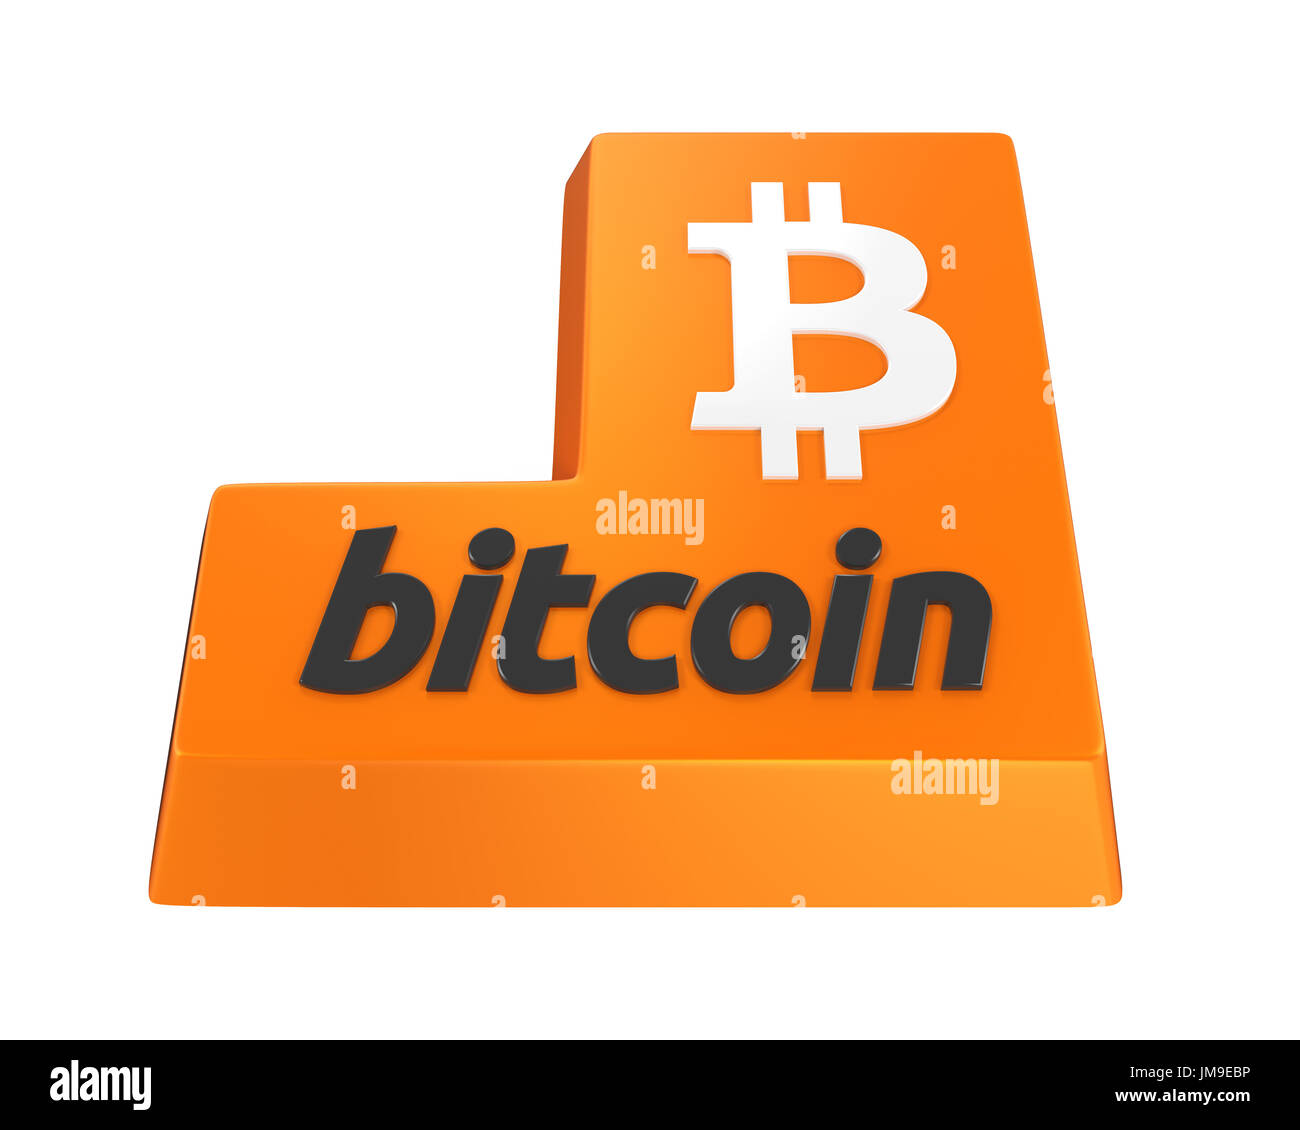 Bitcoin Enter Button Stock Photo